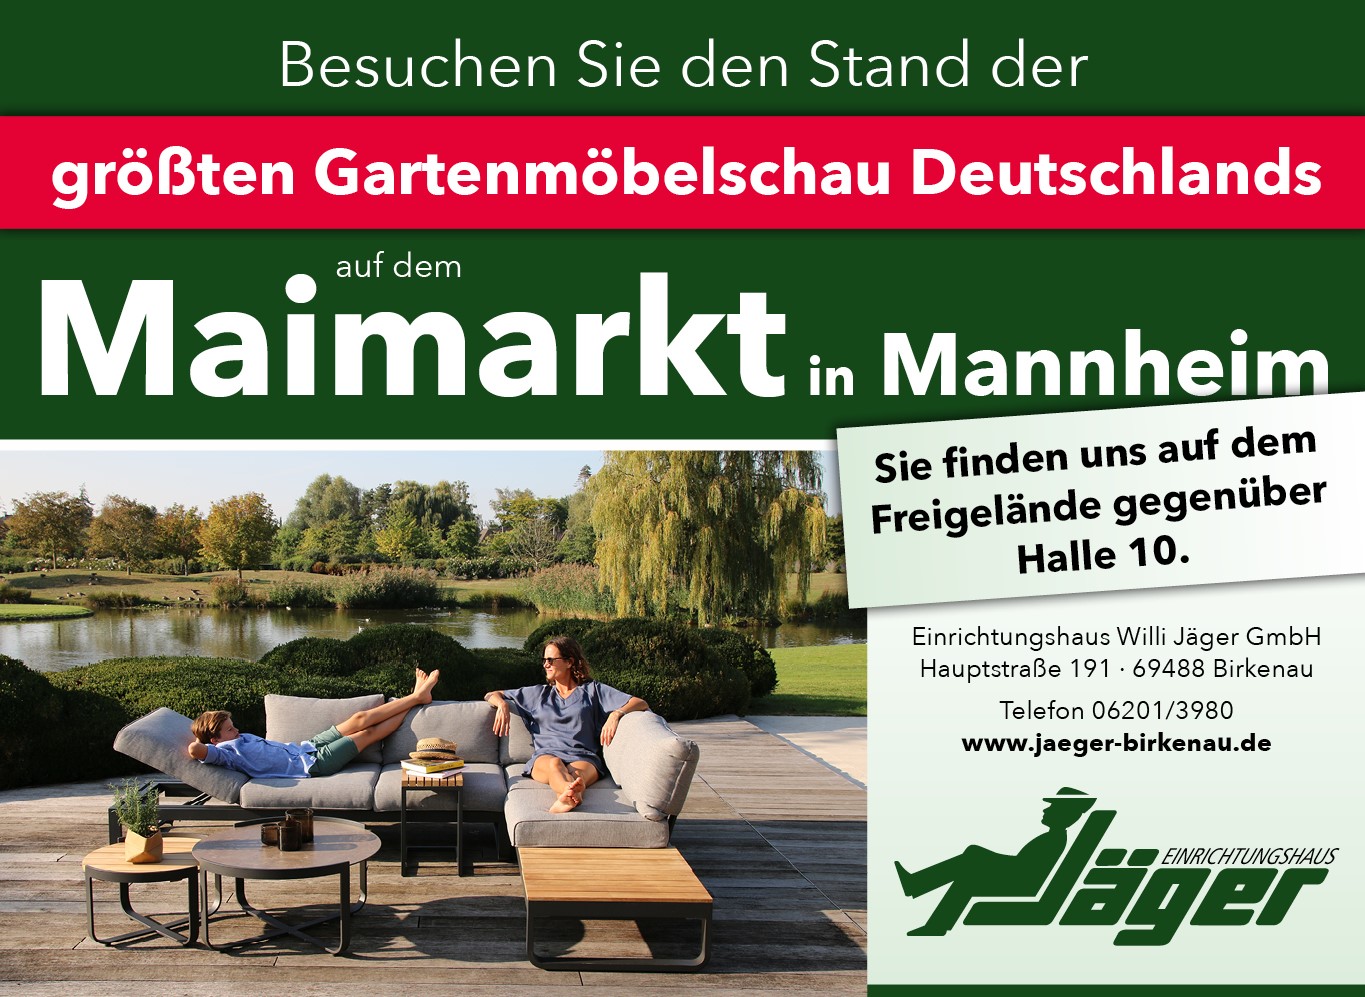 Besuchen Sie den Stand der größten Gartenmöbelschau Deutschlands auf dem Maimarkt in Mannheim. Sie finden uns auf dem Freigelände gegenüber Halle 10